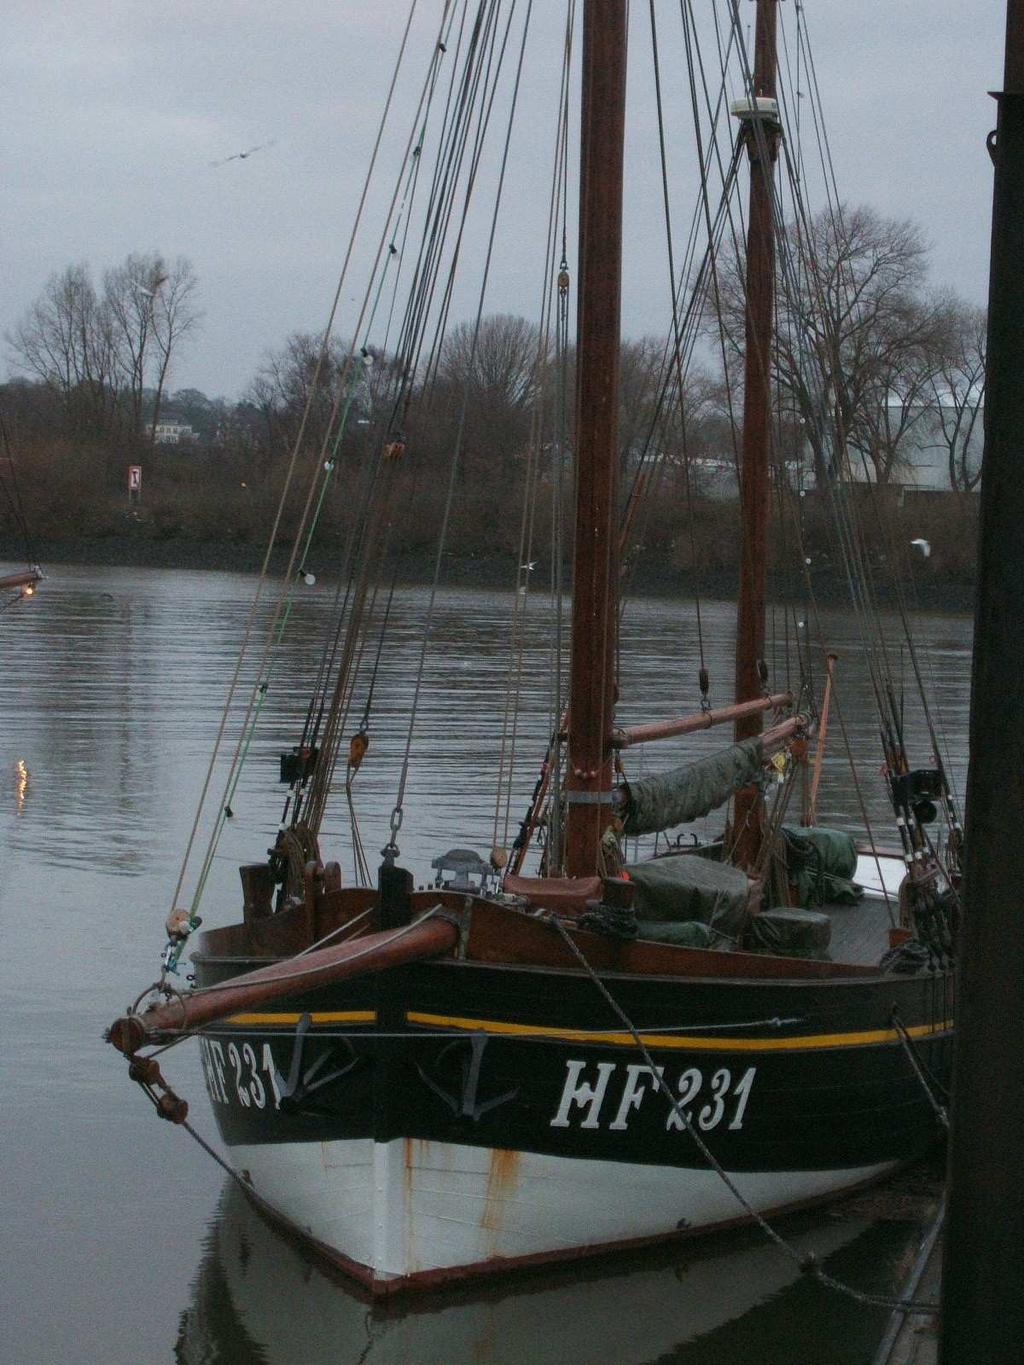 Aufgabe 13: In dem Hafen seht ihr ein restauriertes altes Fischereiboot. Versucht nun zu raten: Wofür stehen die Buchstaben HF an dem Rumpf der Schiffe?